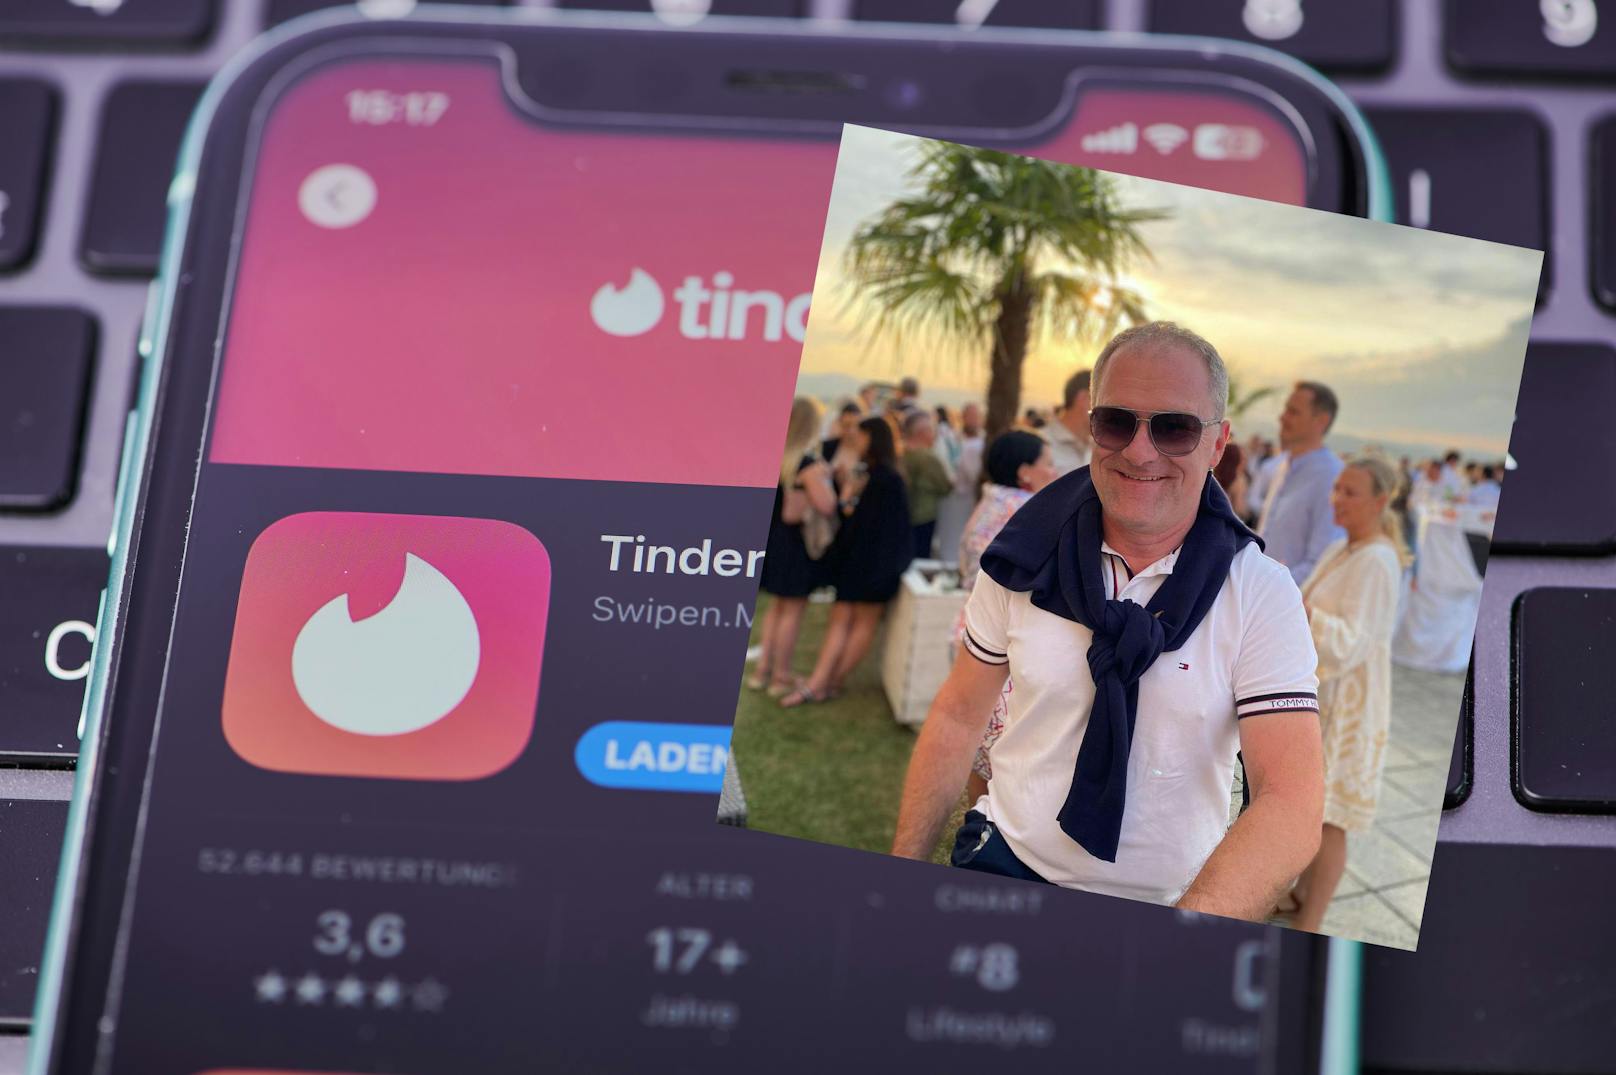 Das Bild von Günter Steindl auf der Dating- und Sex-App sorgte für Aufregung im Freundeskreis.